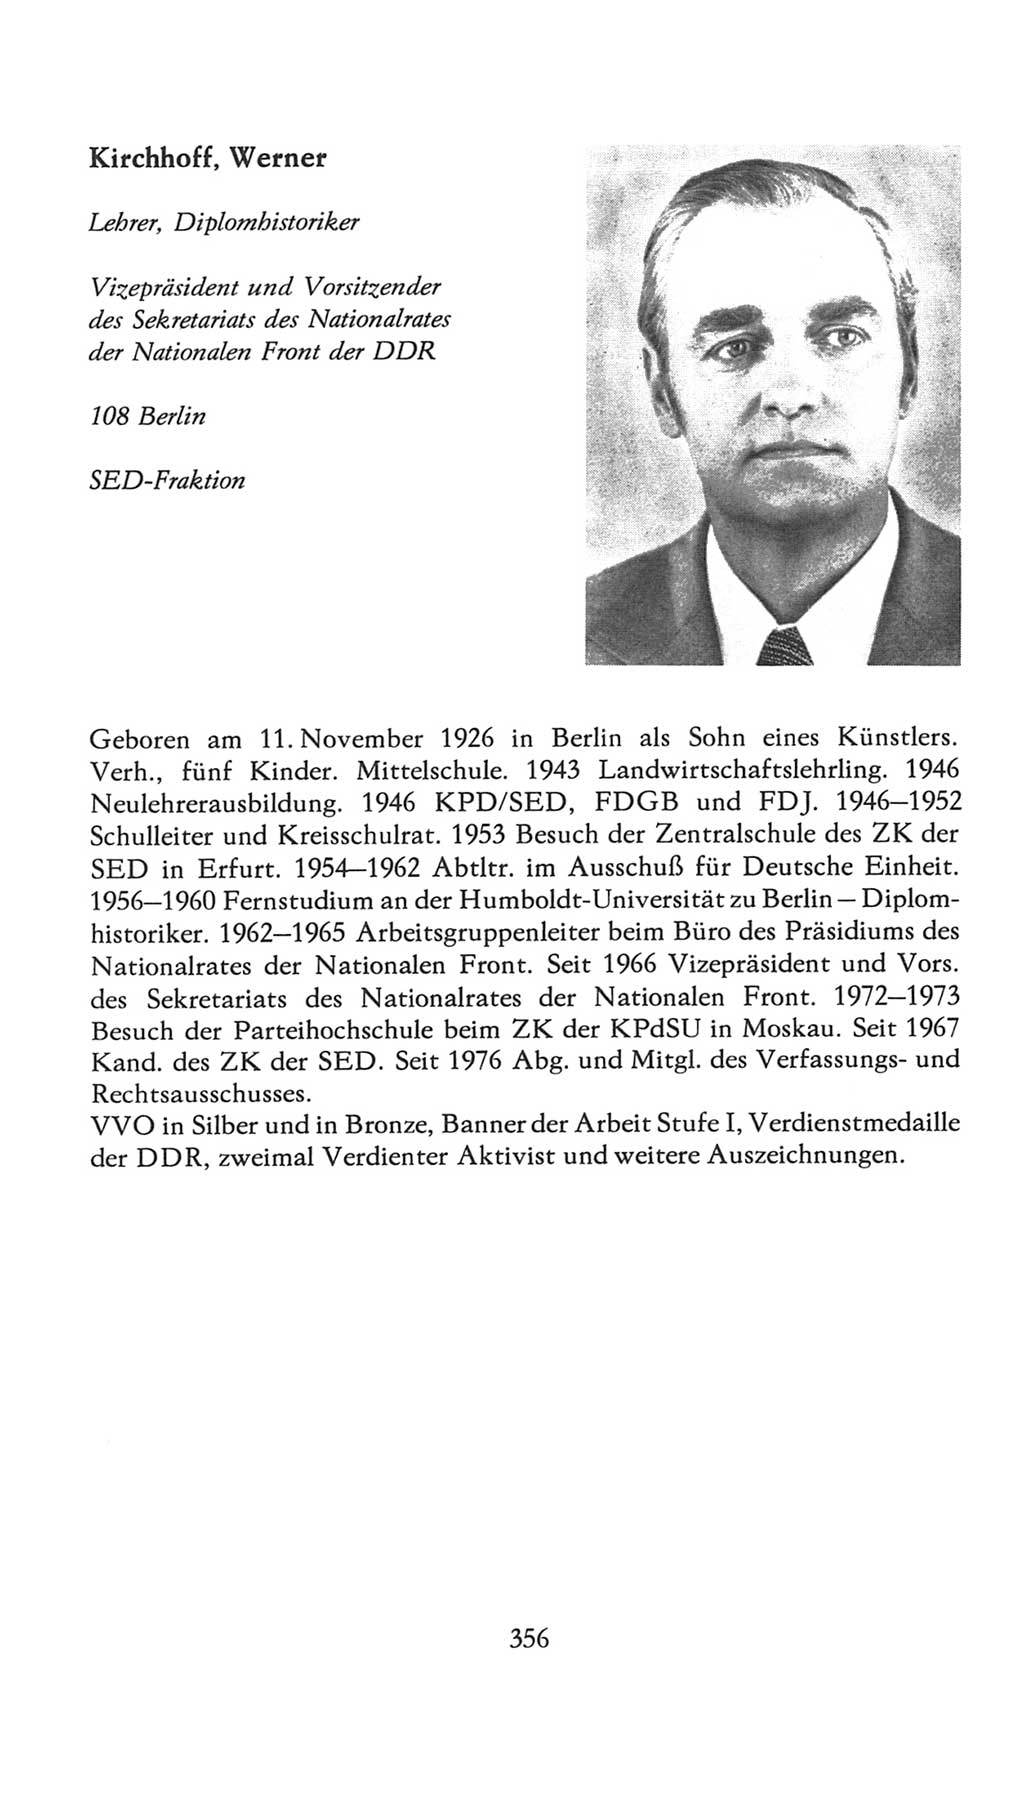 Volkskammer (VK) der Deutschen Demokratischen Republik (DDR), 7. Wahlperiode 1976-1981, Seite 356 (VK. DDR 7. WP. 1976-1981, S. 356)